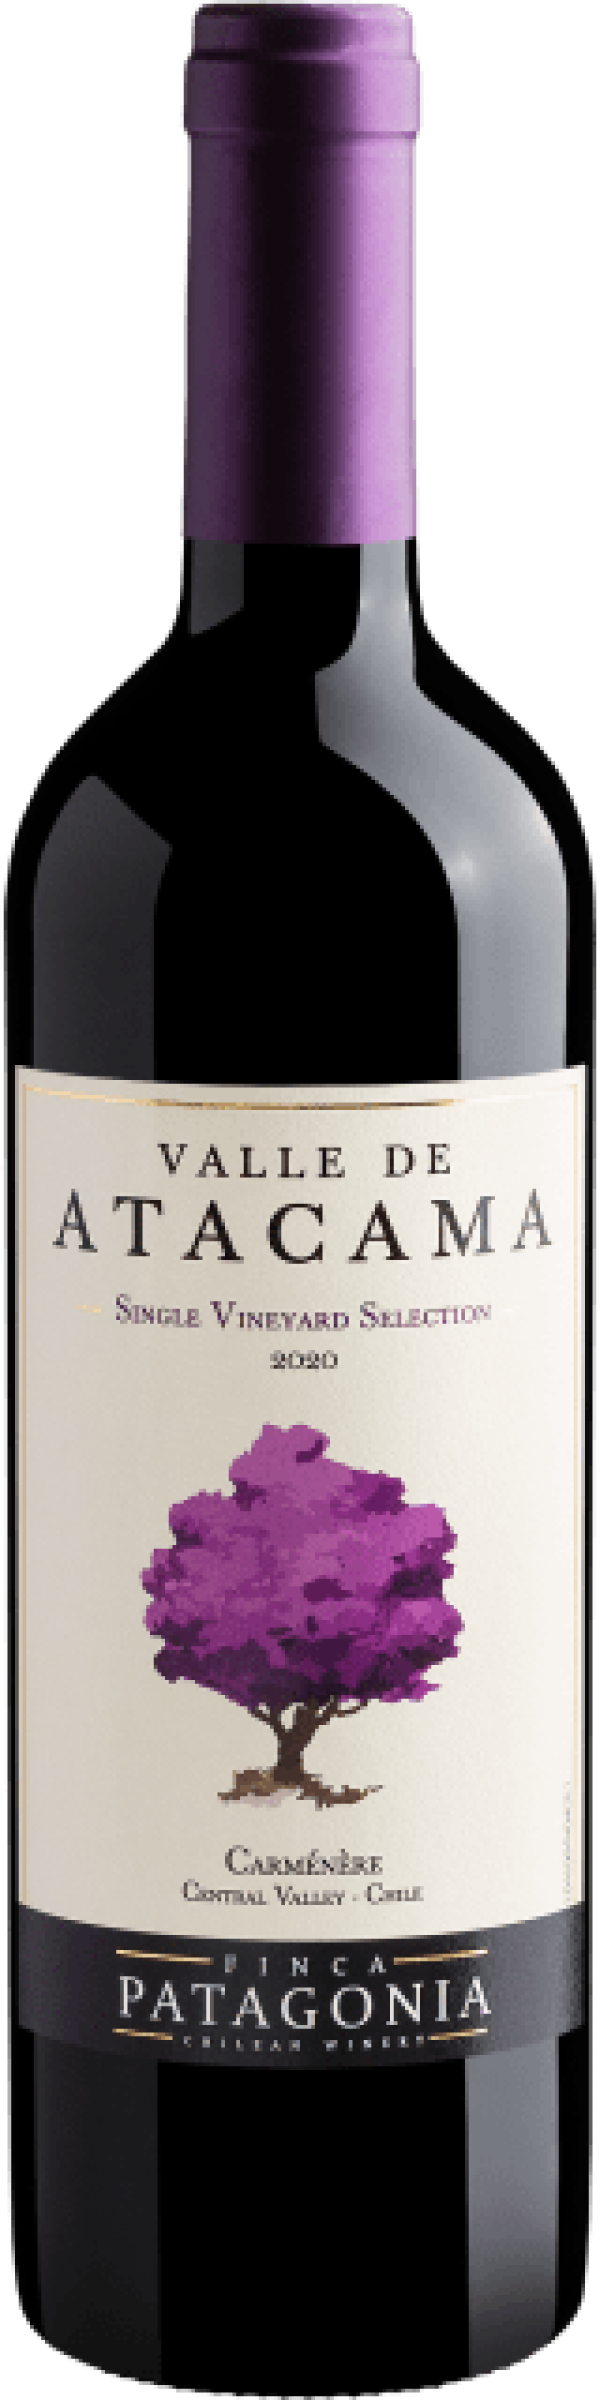 Valle de Atacama Single Vineyard Selection Carménère Central Valley D.O. 2020